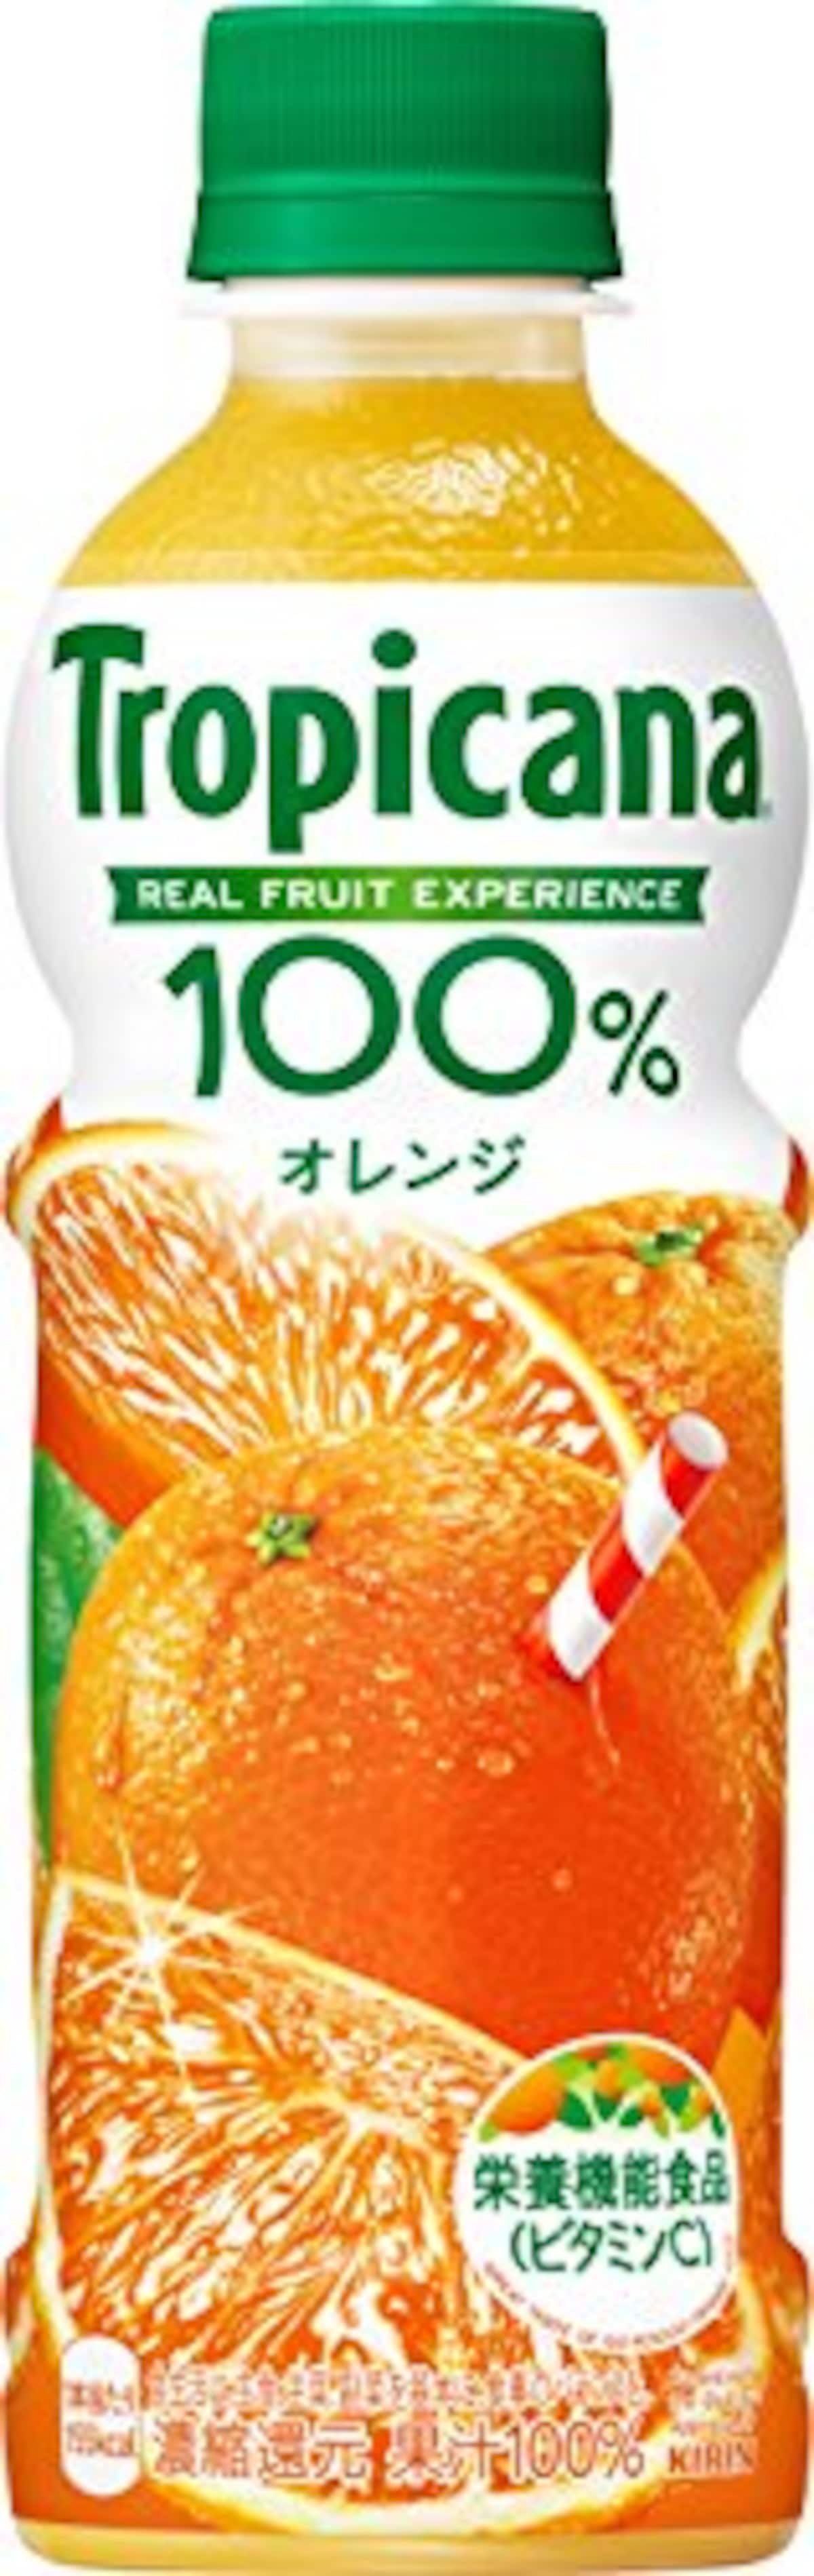 トロピカーナ 100%オレンジ